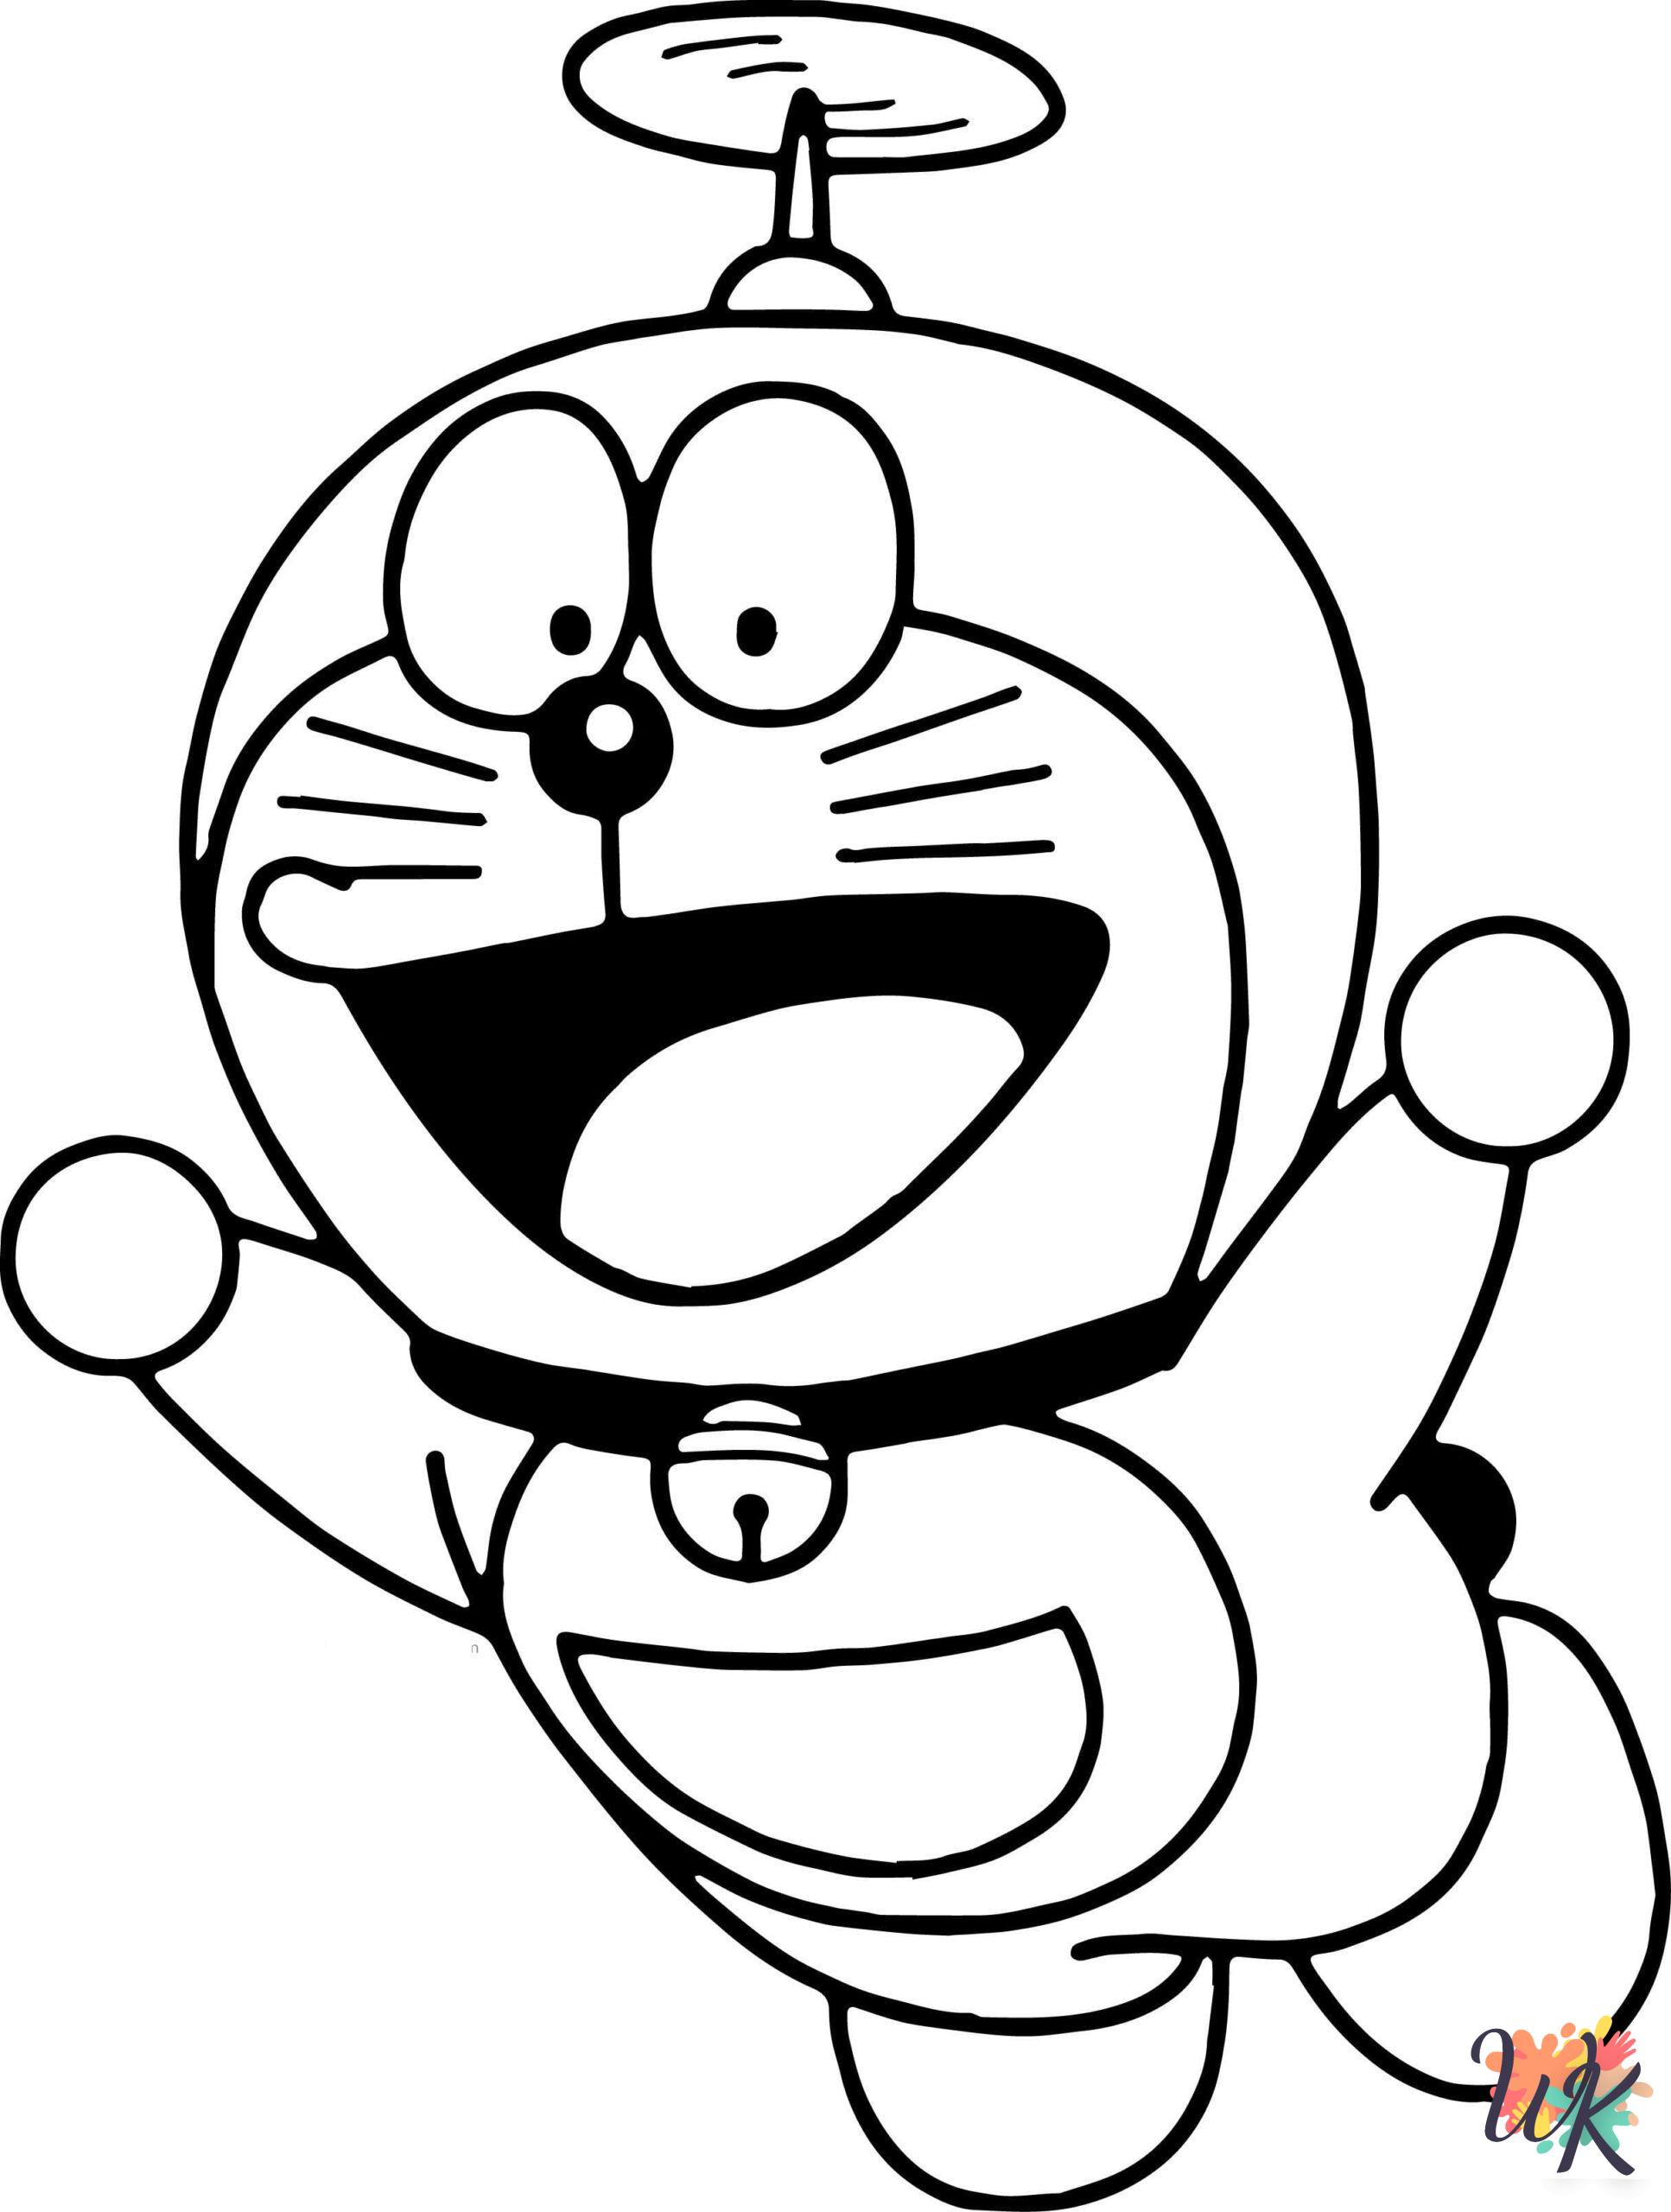 fun Doraemon coloring pages